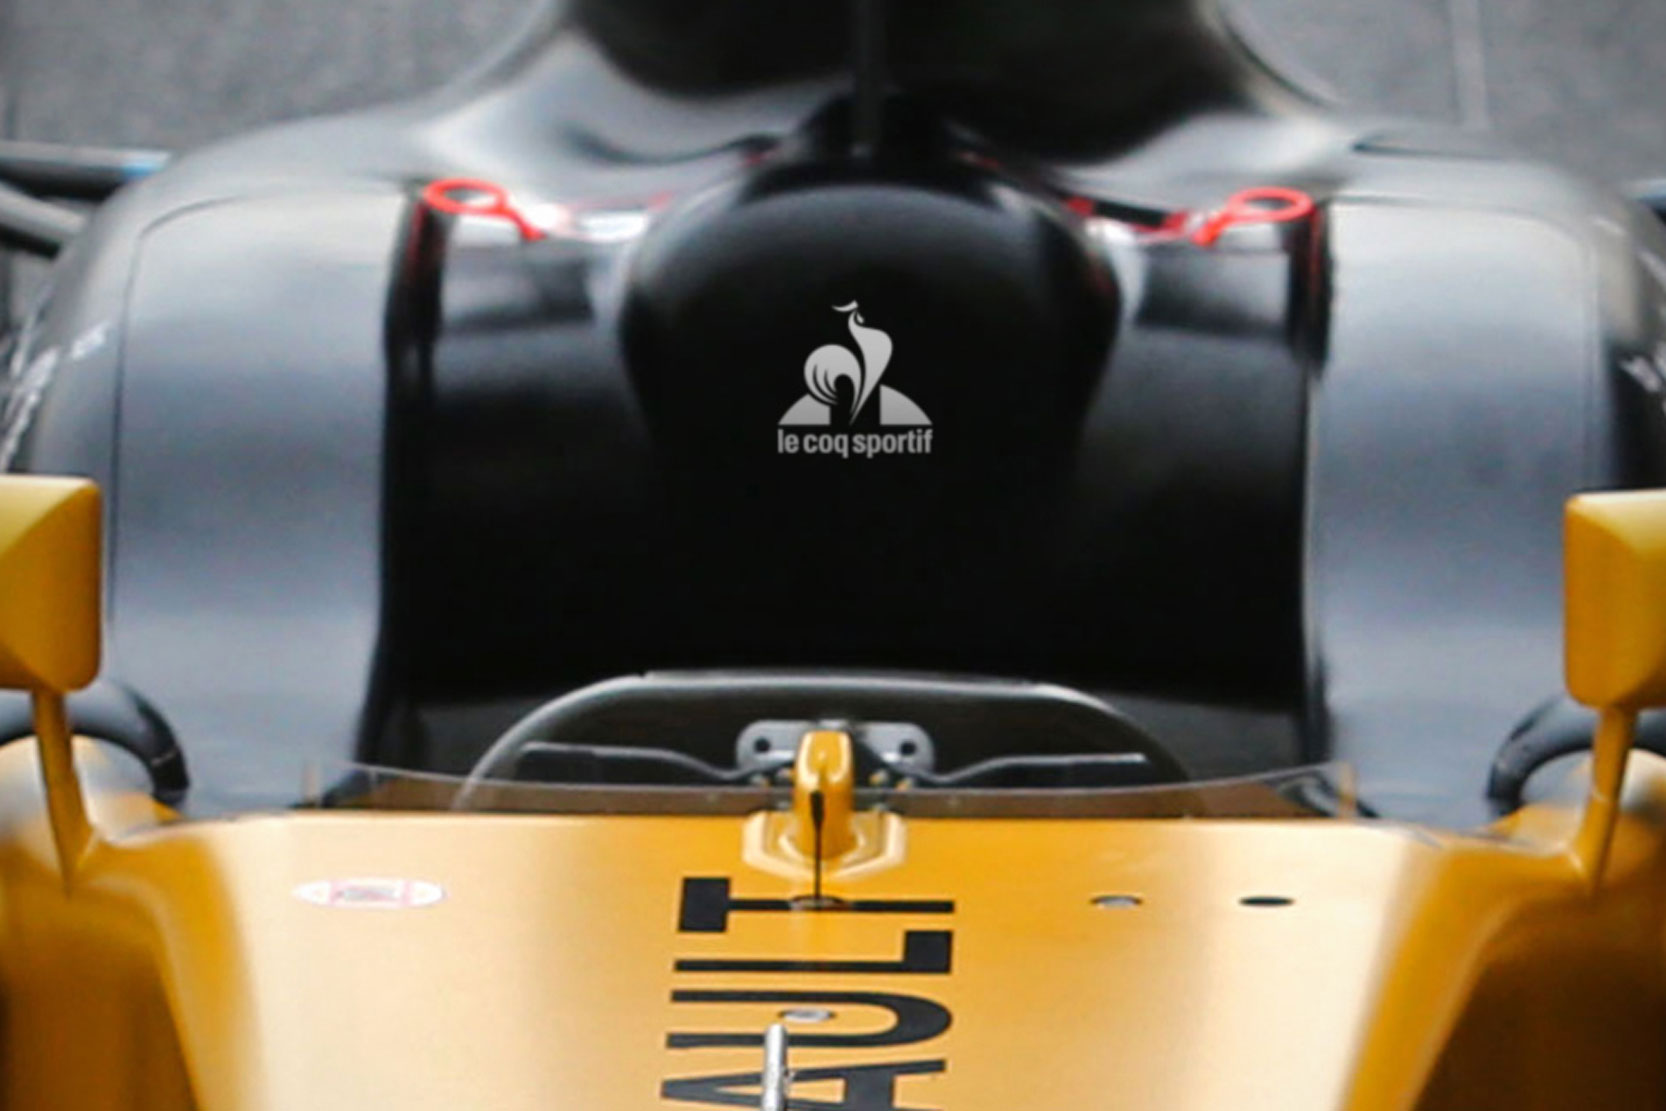 Image principale de l'actu: Le coq sportif present en f1 avec renault formula one 